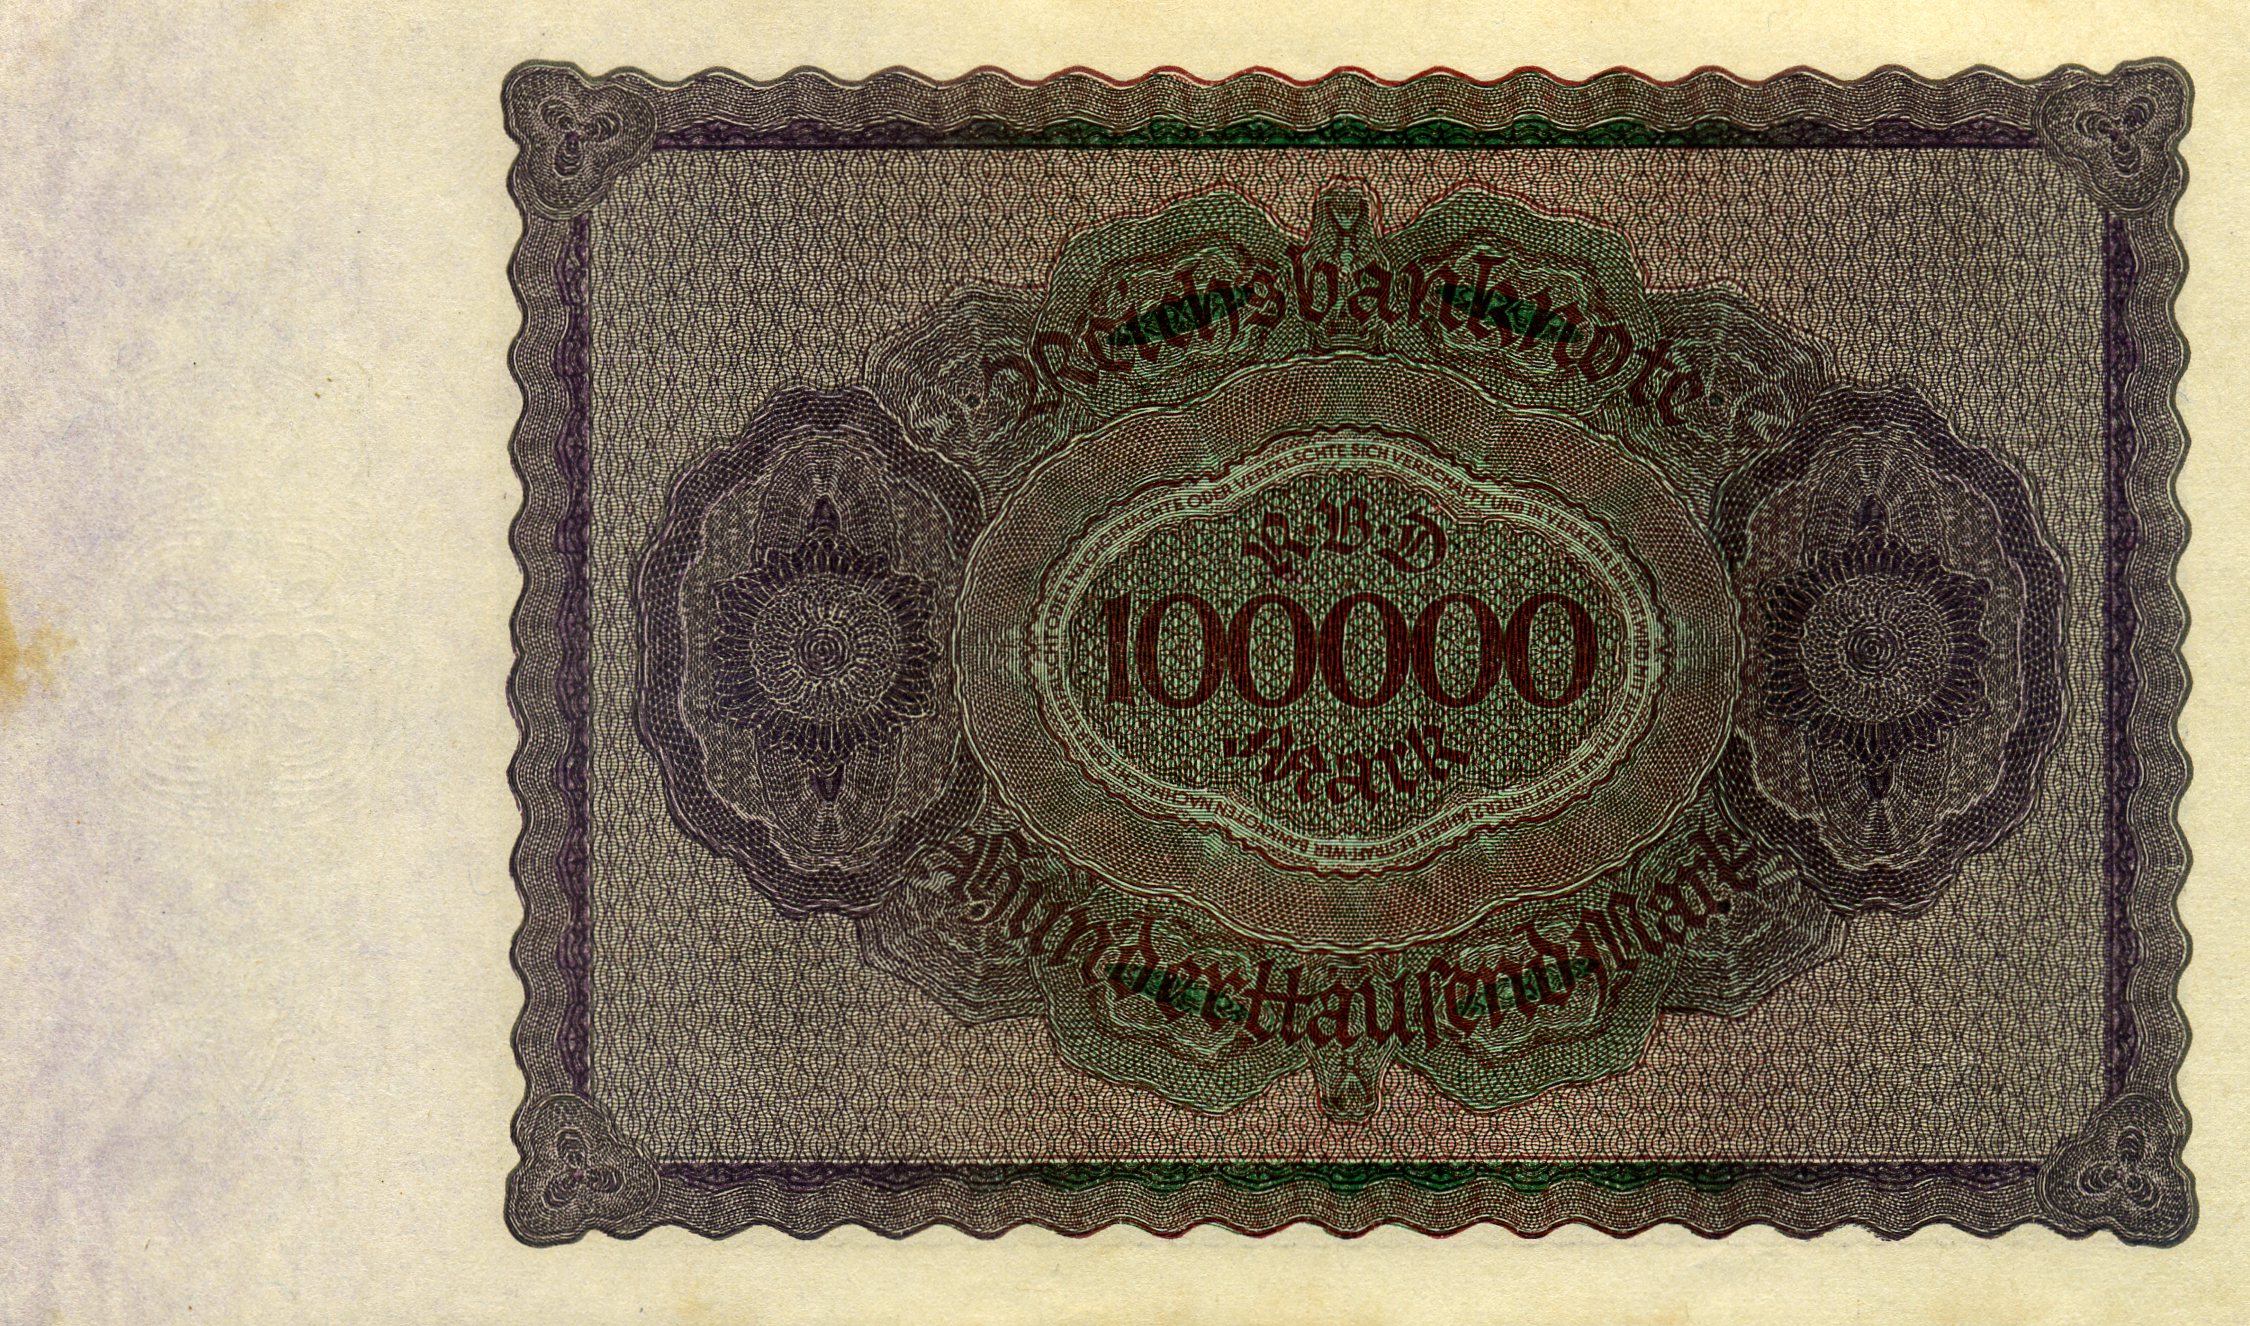 100000 марок 1 февраля 1923 года. Реверс. Реферат Рефератович.